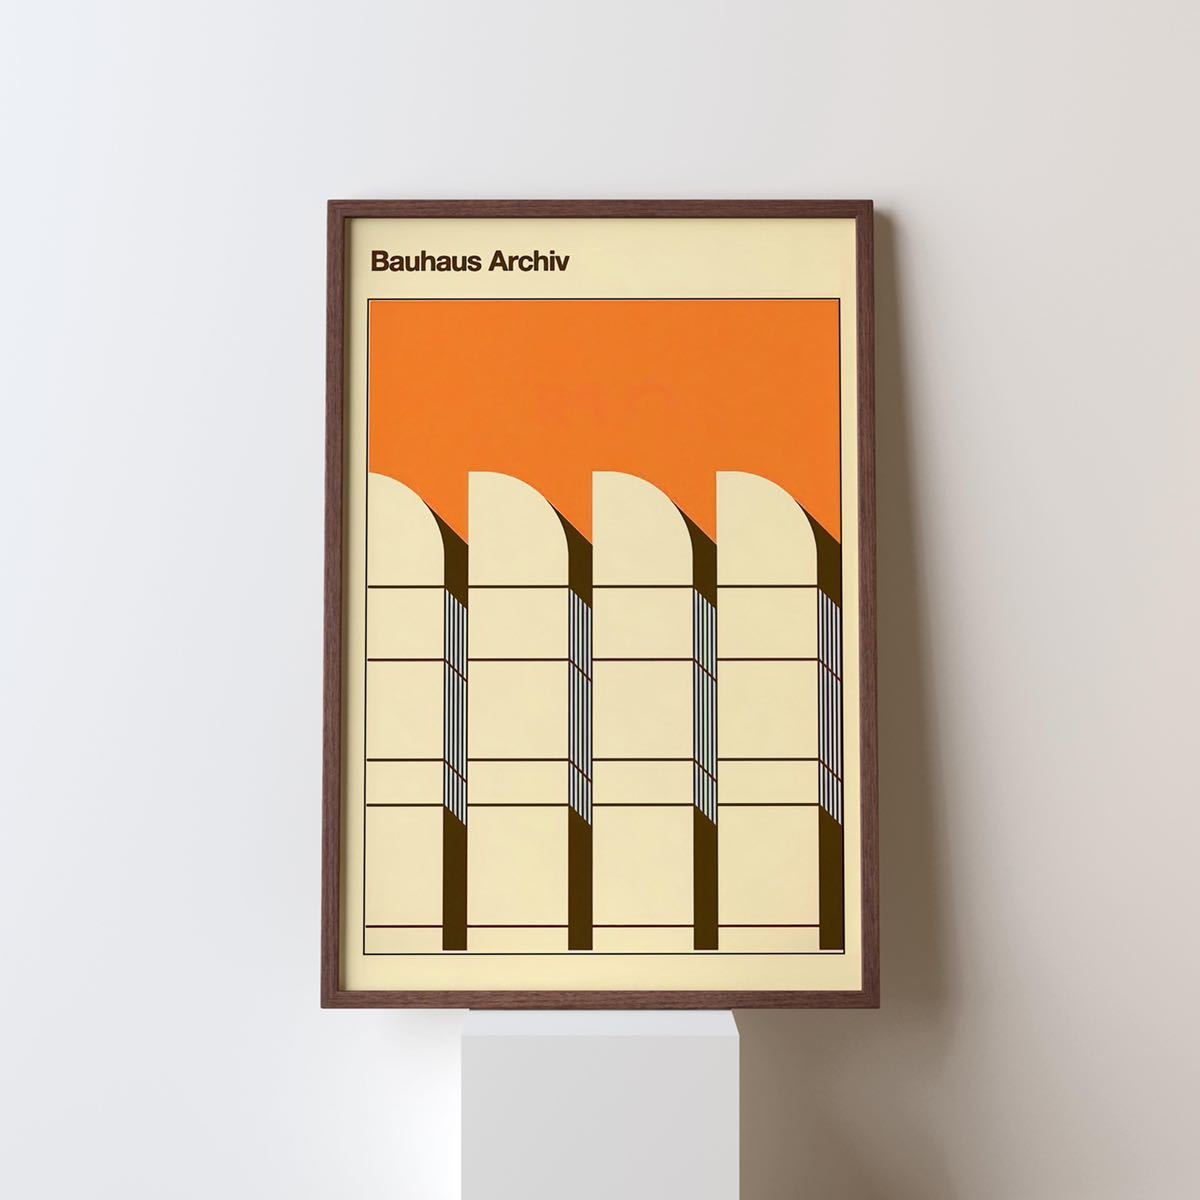 Bauhaus バウハウス ビンテージアートポスター 展示会ポスター 海外アートポスター 芸術 デザイン レトロ モダンデザイン インテリアの画像1